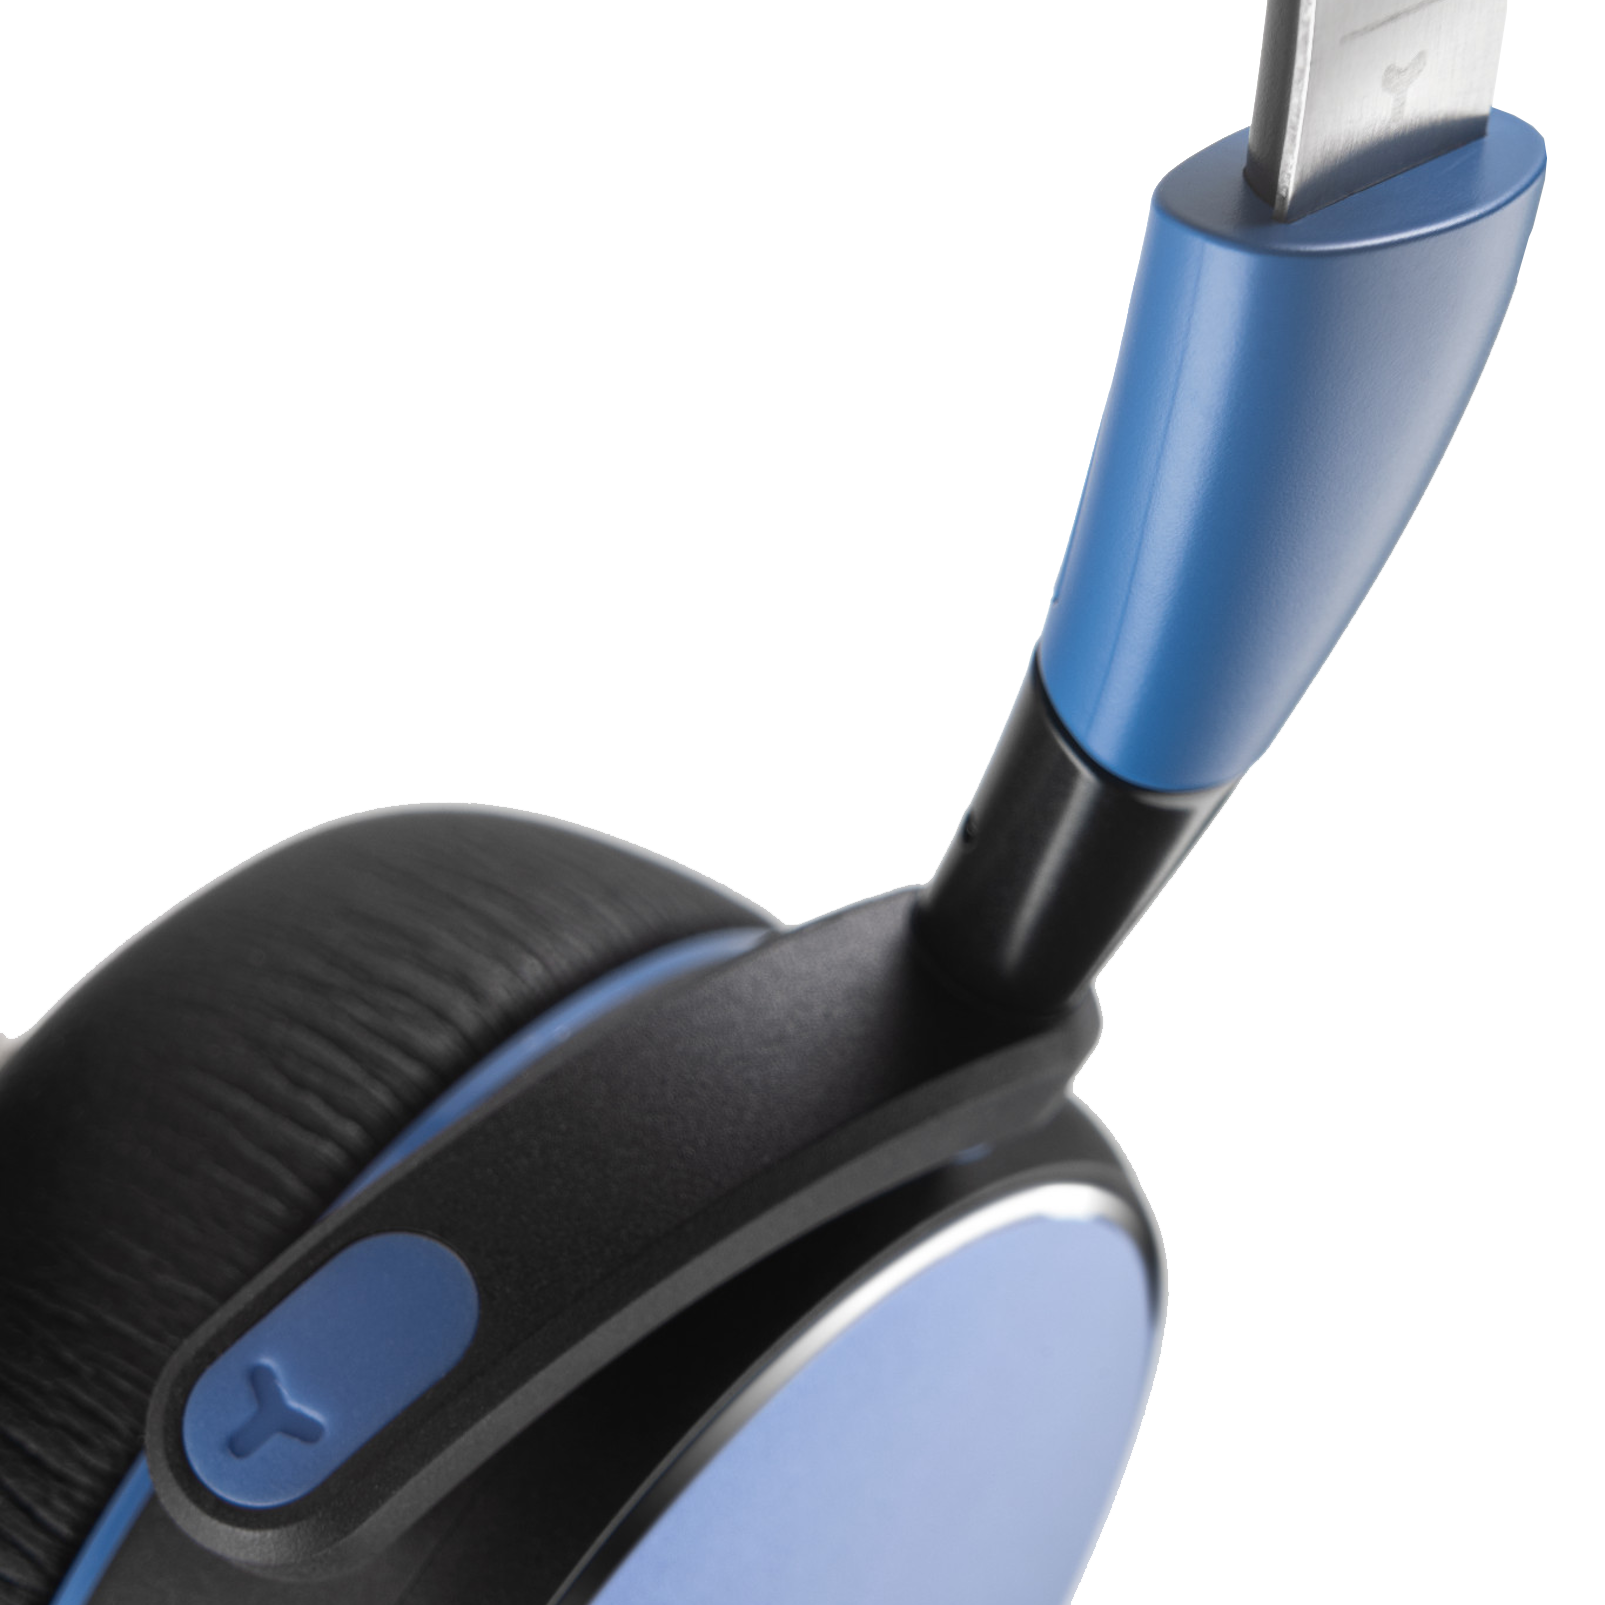 AKG Y400 WIRELESS - Blue - Wireless mini on-ear headphones - Detailshot 1